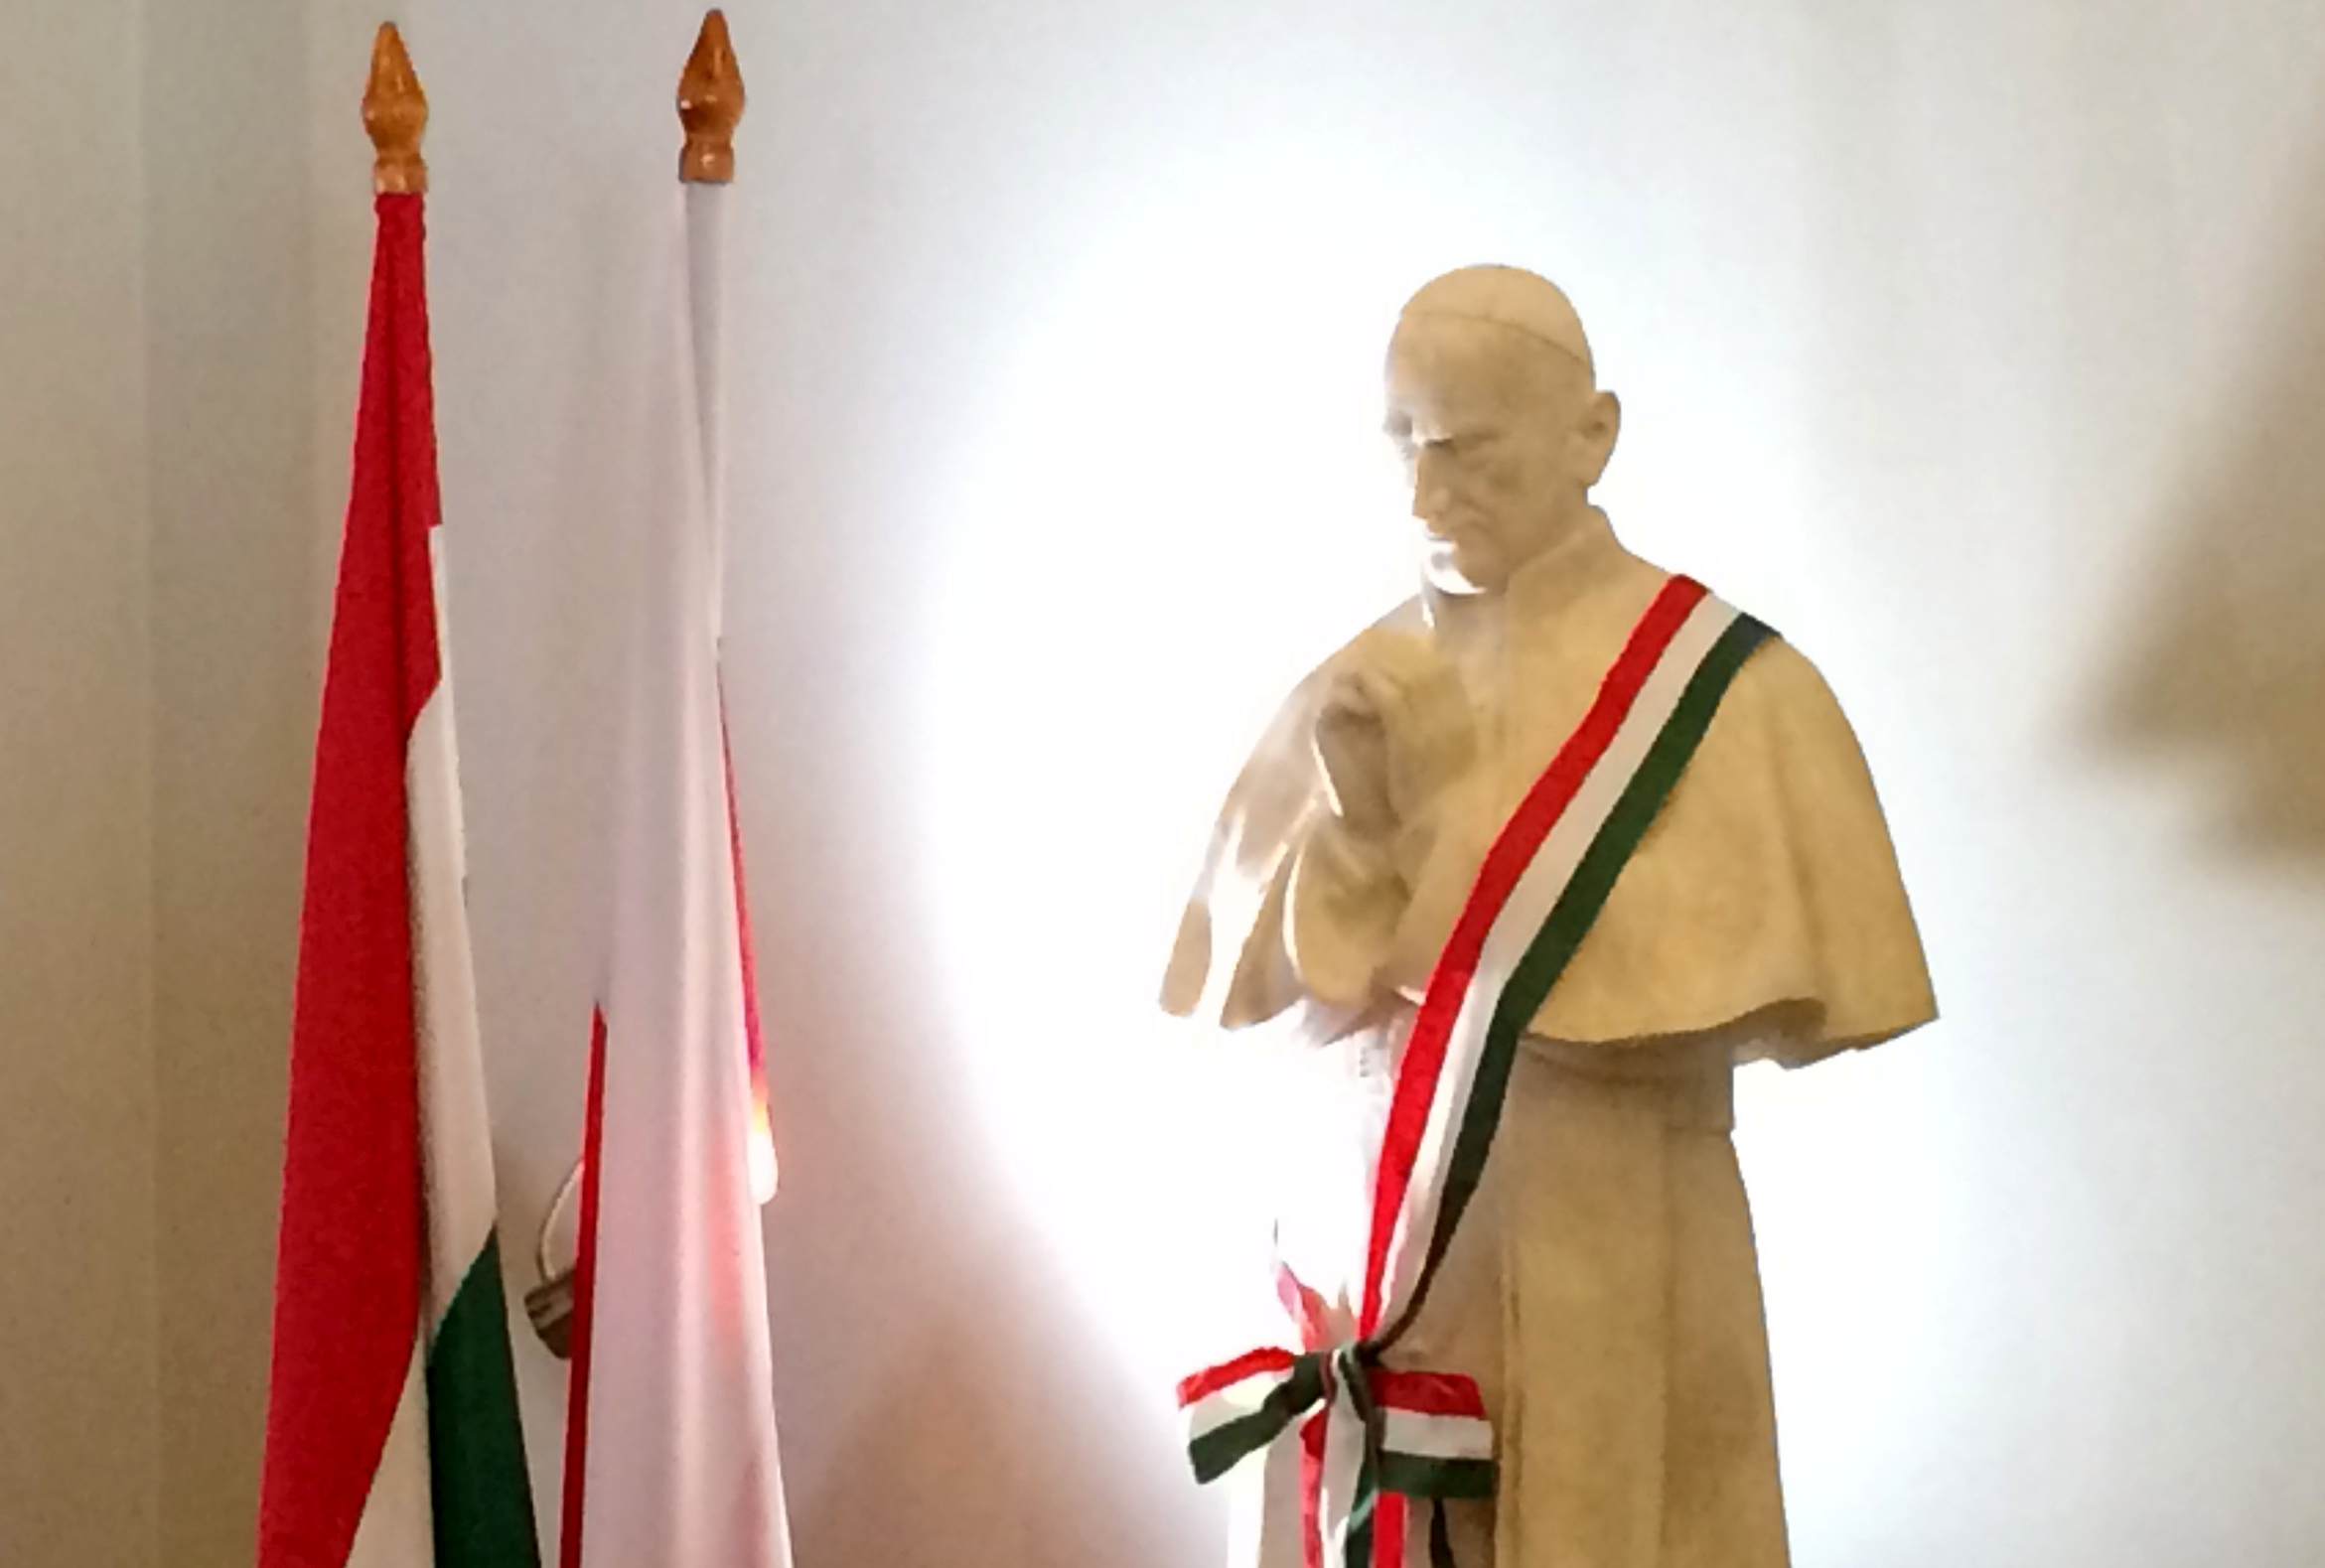 06.11.2021 r. w Sanktuarium Bożego Miłosierdzia w Krakowie odsłonięty został pomnik Kardynała József’a Mintszenty’ego